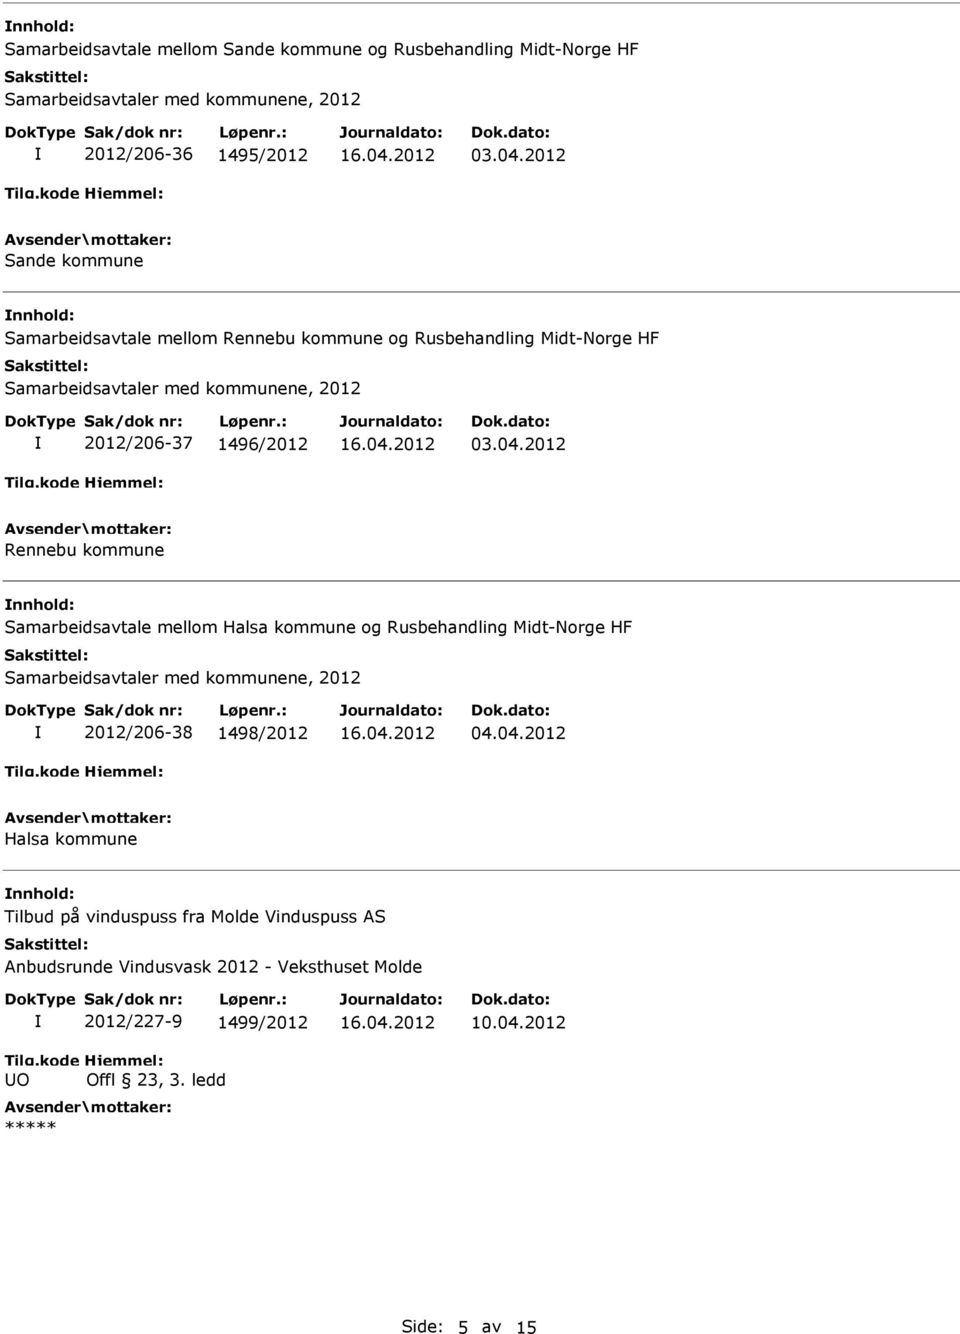 2012 Rennebu kommune Samarbeidsavtale mellom Halsa kommune og Rusbehandling Midt-Norge HF Samarbeidsavtaler med kommunene, 2012 2012/206-38 1498/2012 04.